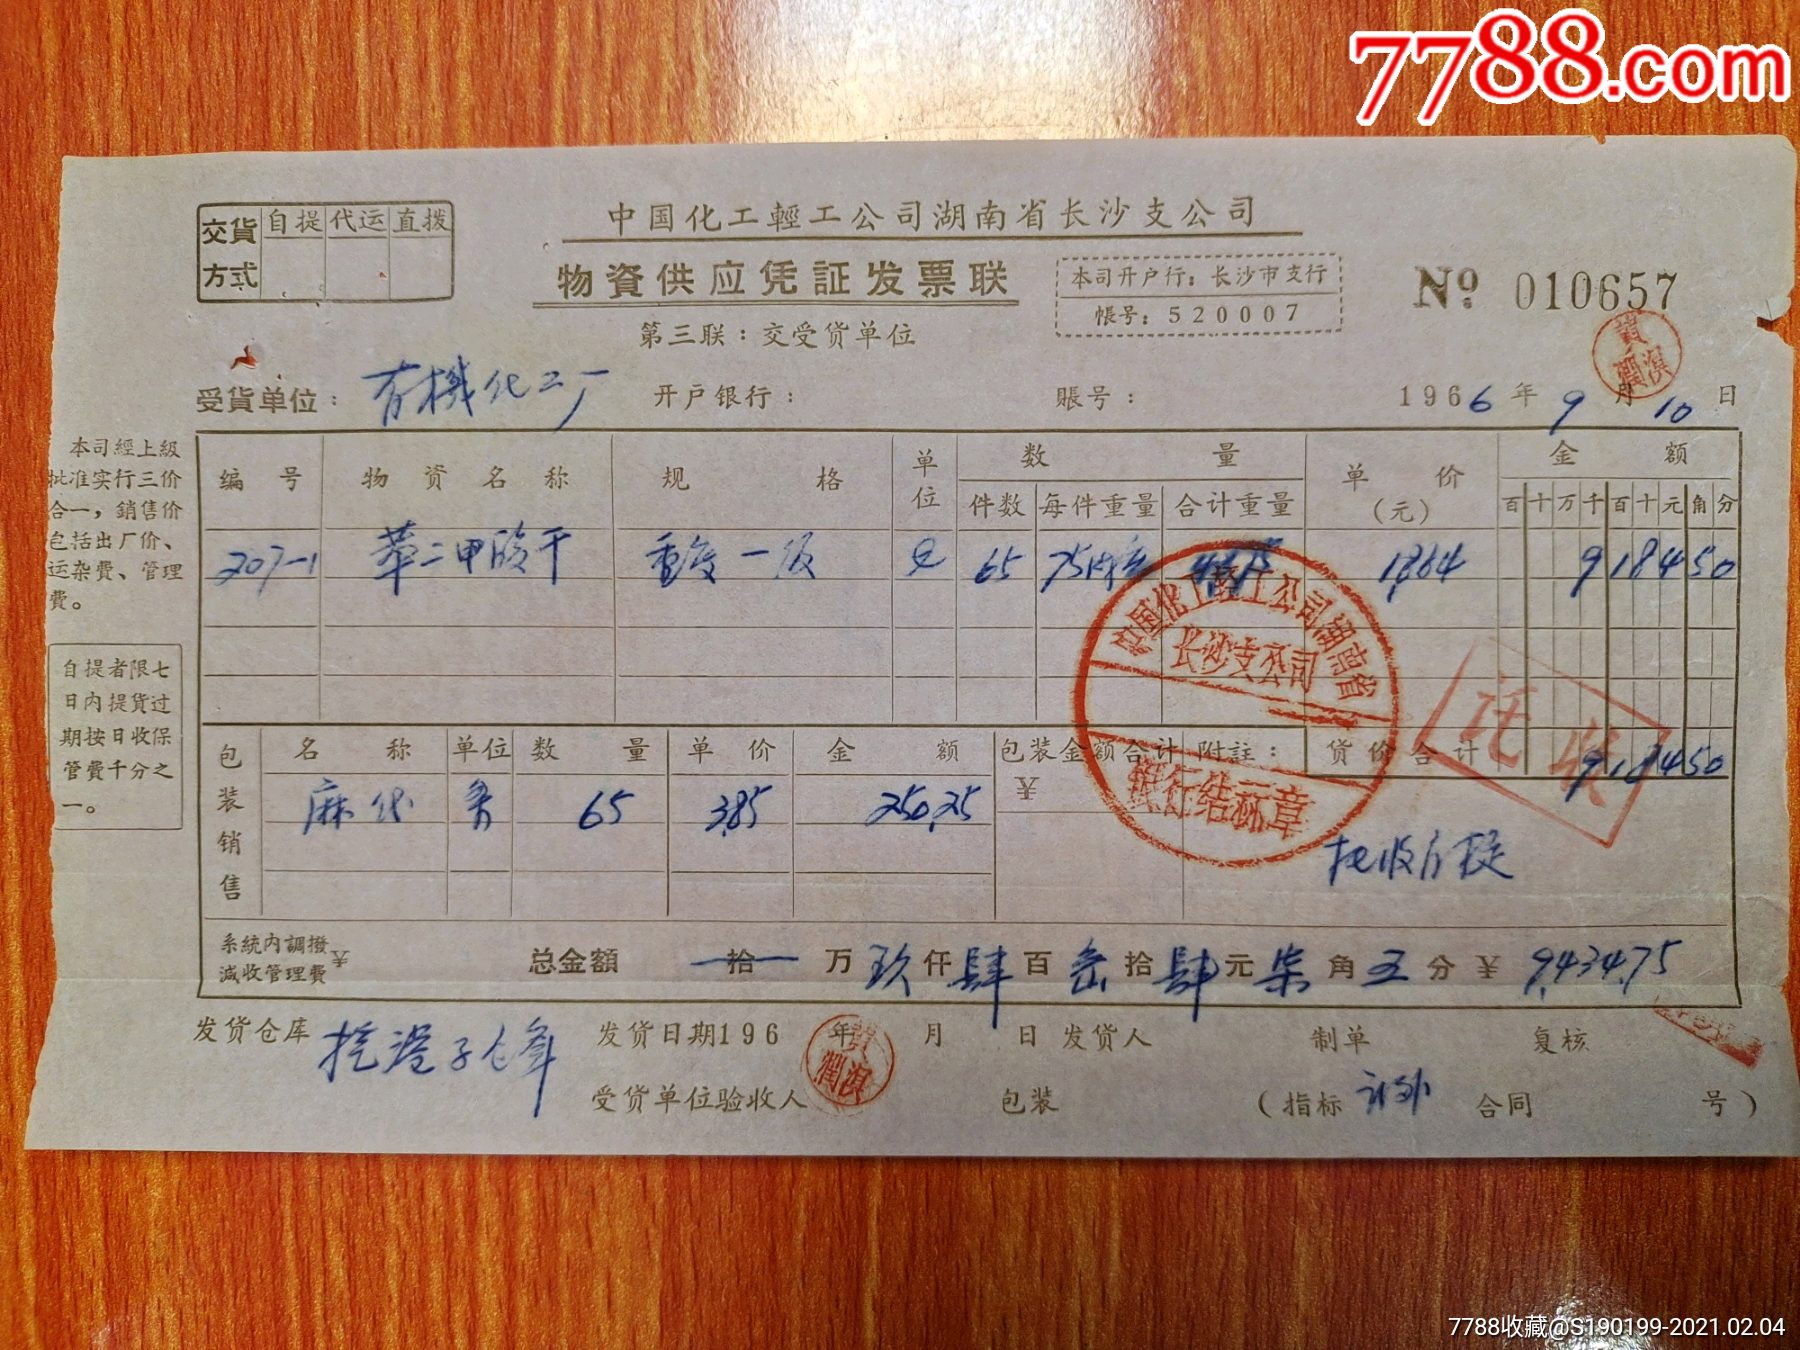 中国化工轻工公司湖南省长沙支公司物资供应凭证发票联苯二甲酸酐